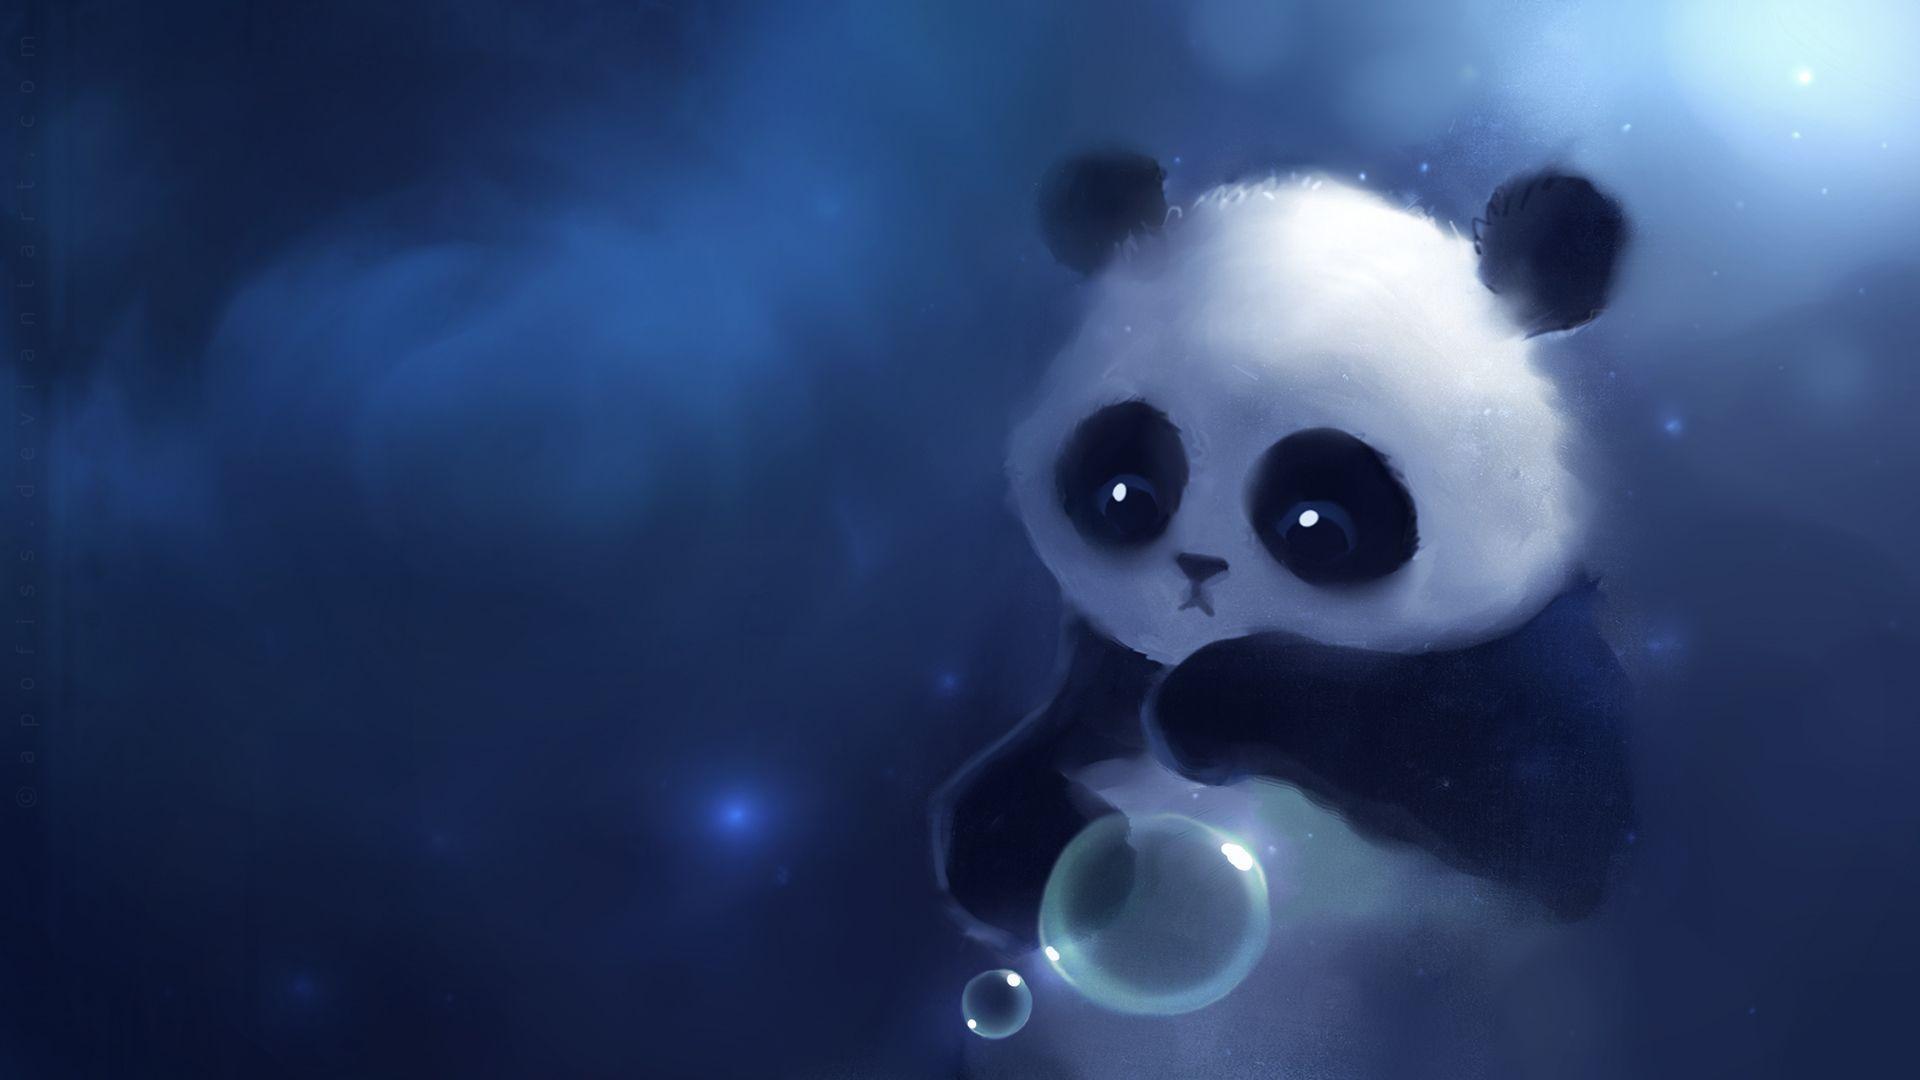 Little Cute Panda Bear Painting Wonderful Art Wallpaper